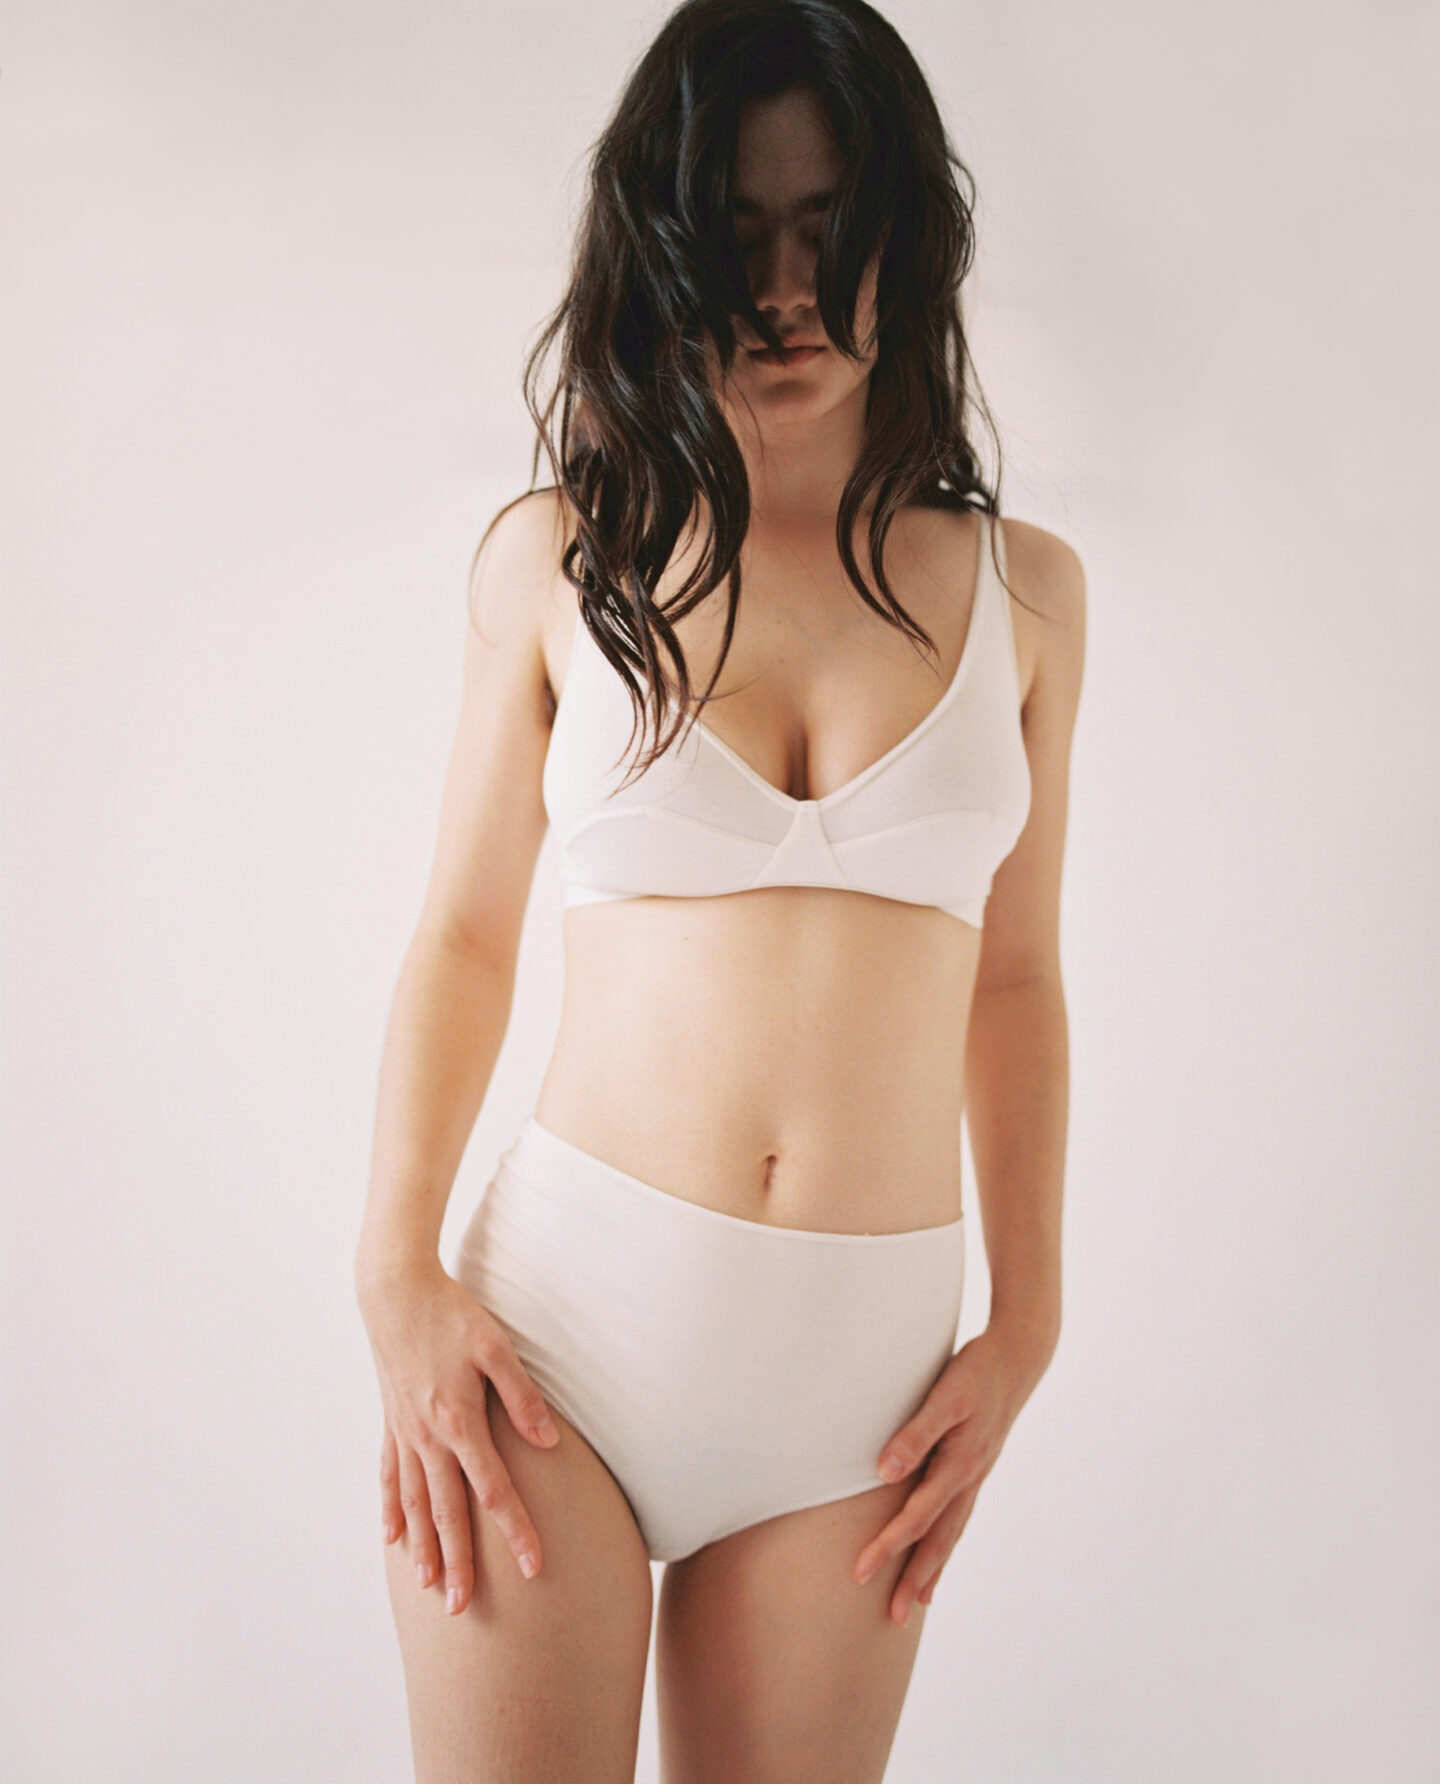 talk under light: underwear that combines minimalism and